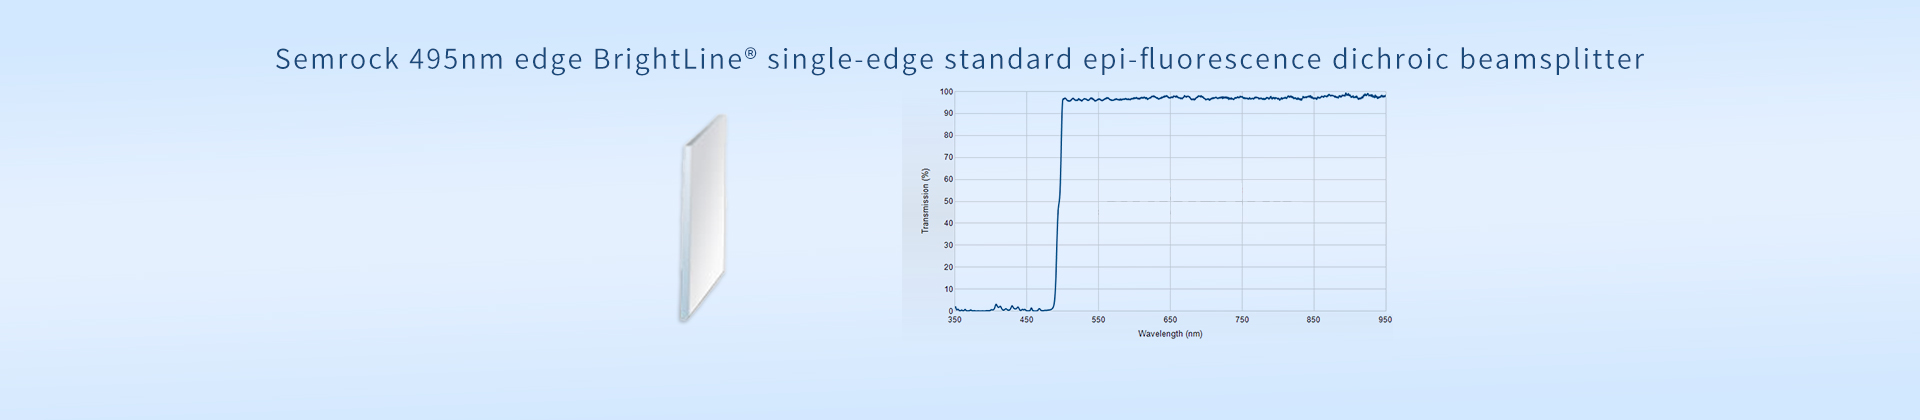 Semrock 495nm edge BrightLine® single-edge standard epi-fluorescence dichroic beamsplitter